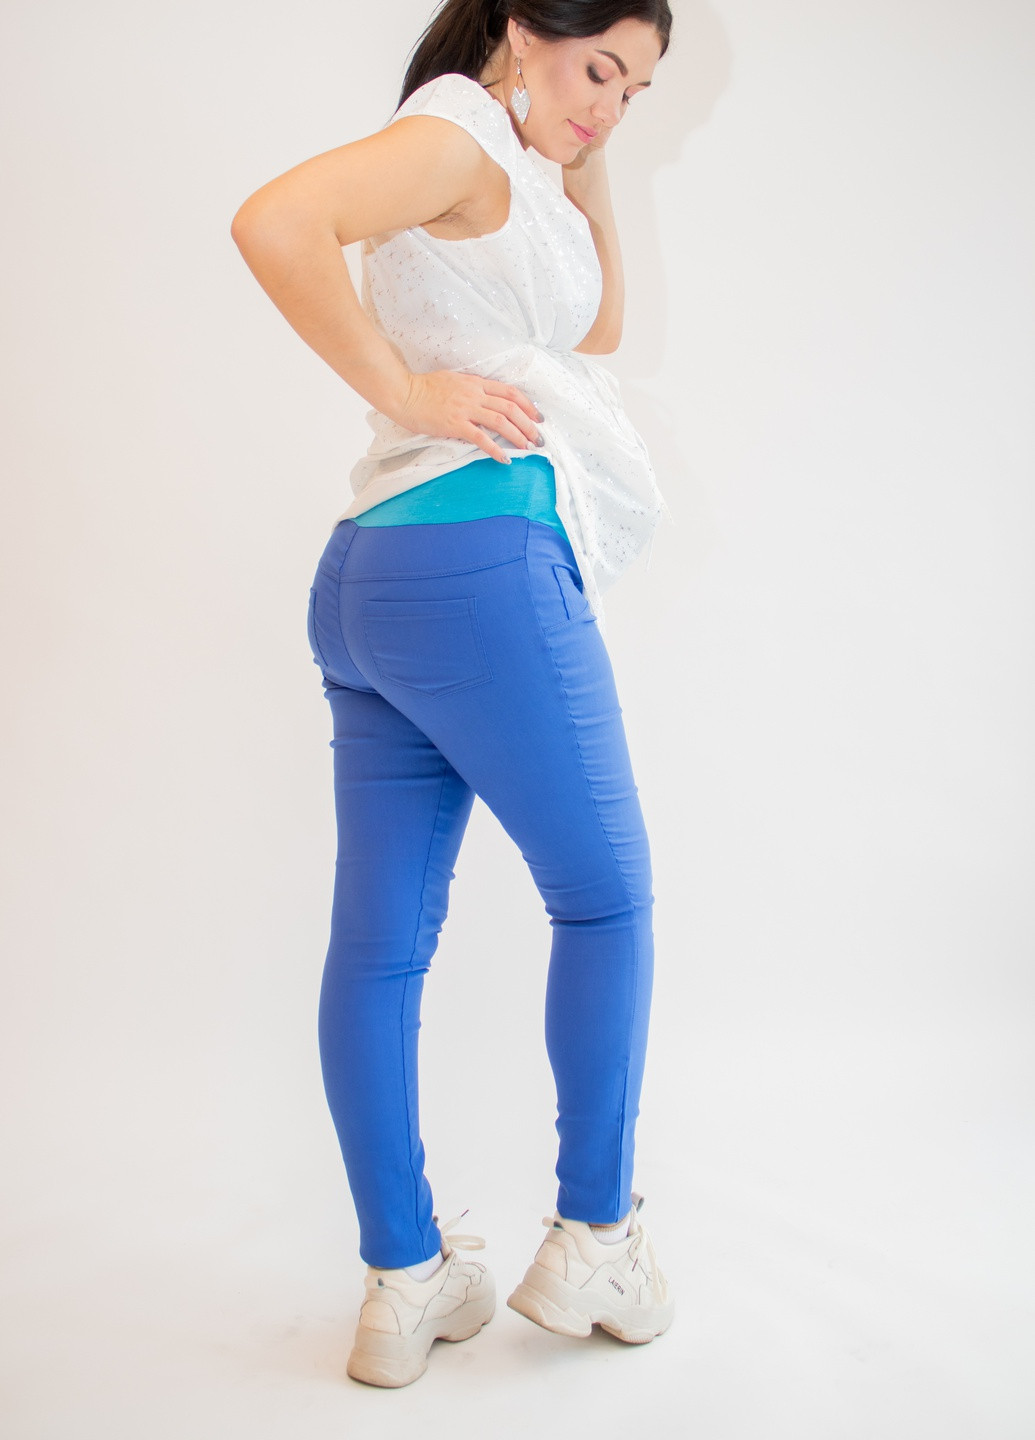 Голубые летние джеггинсы джинсы для беременных premom м голубые (44-46) Makosh.top